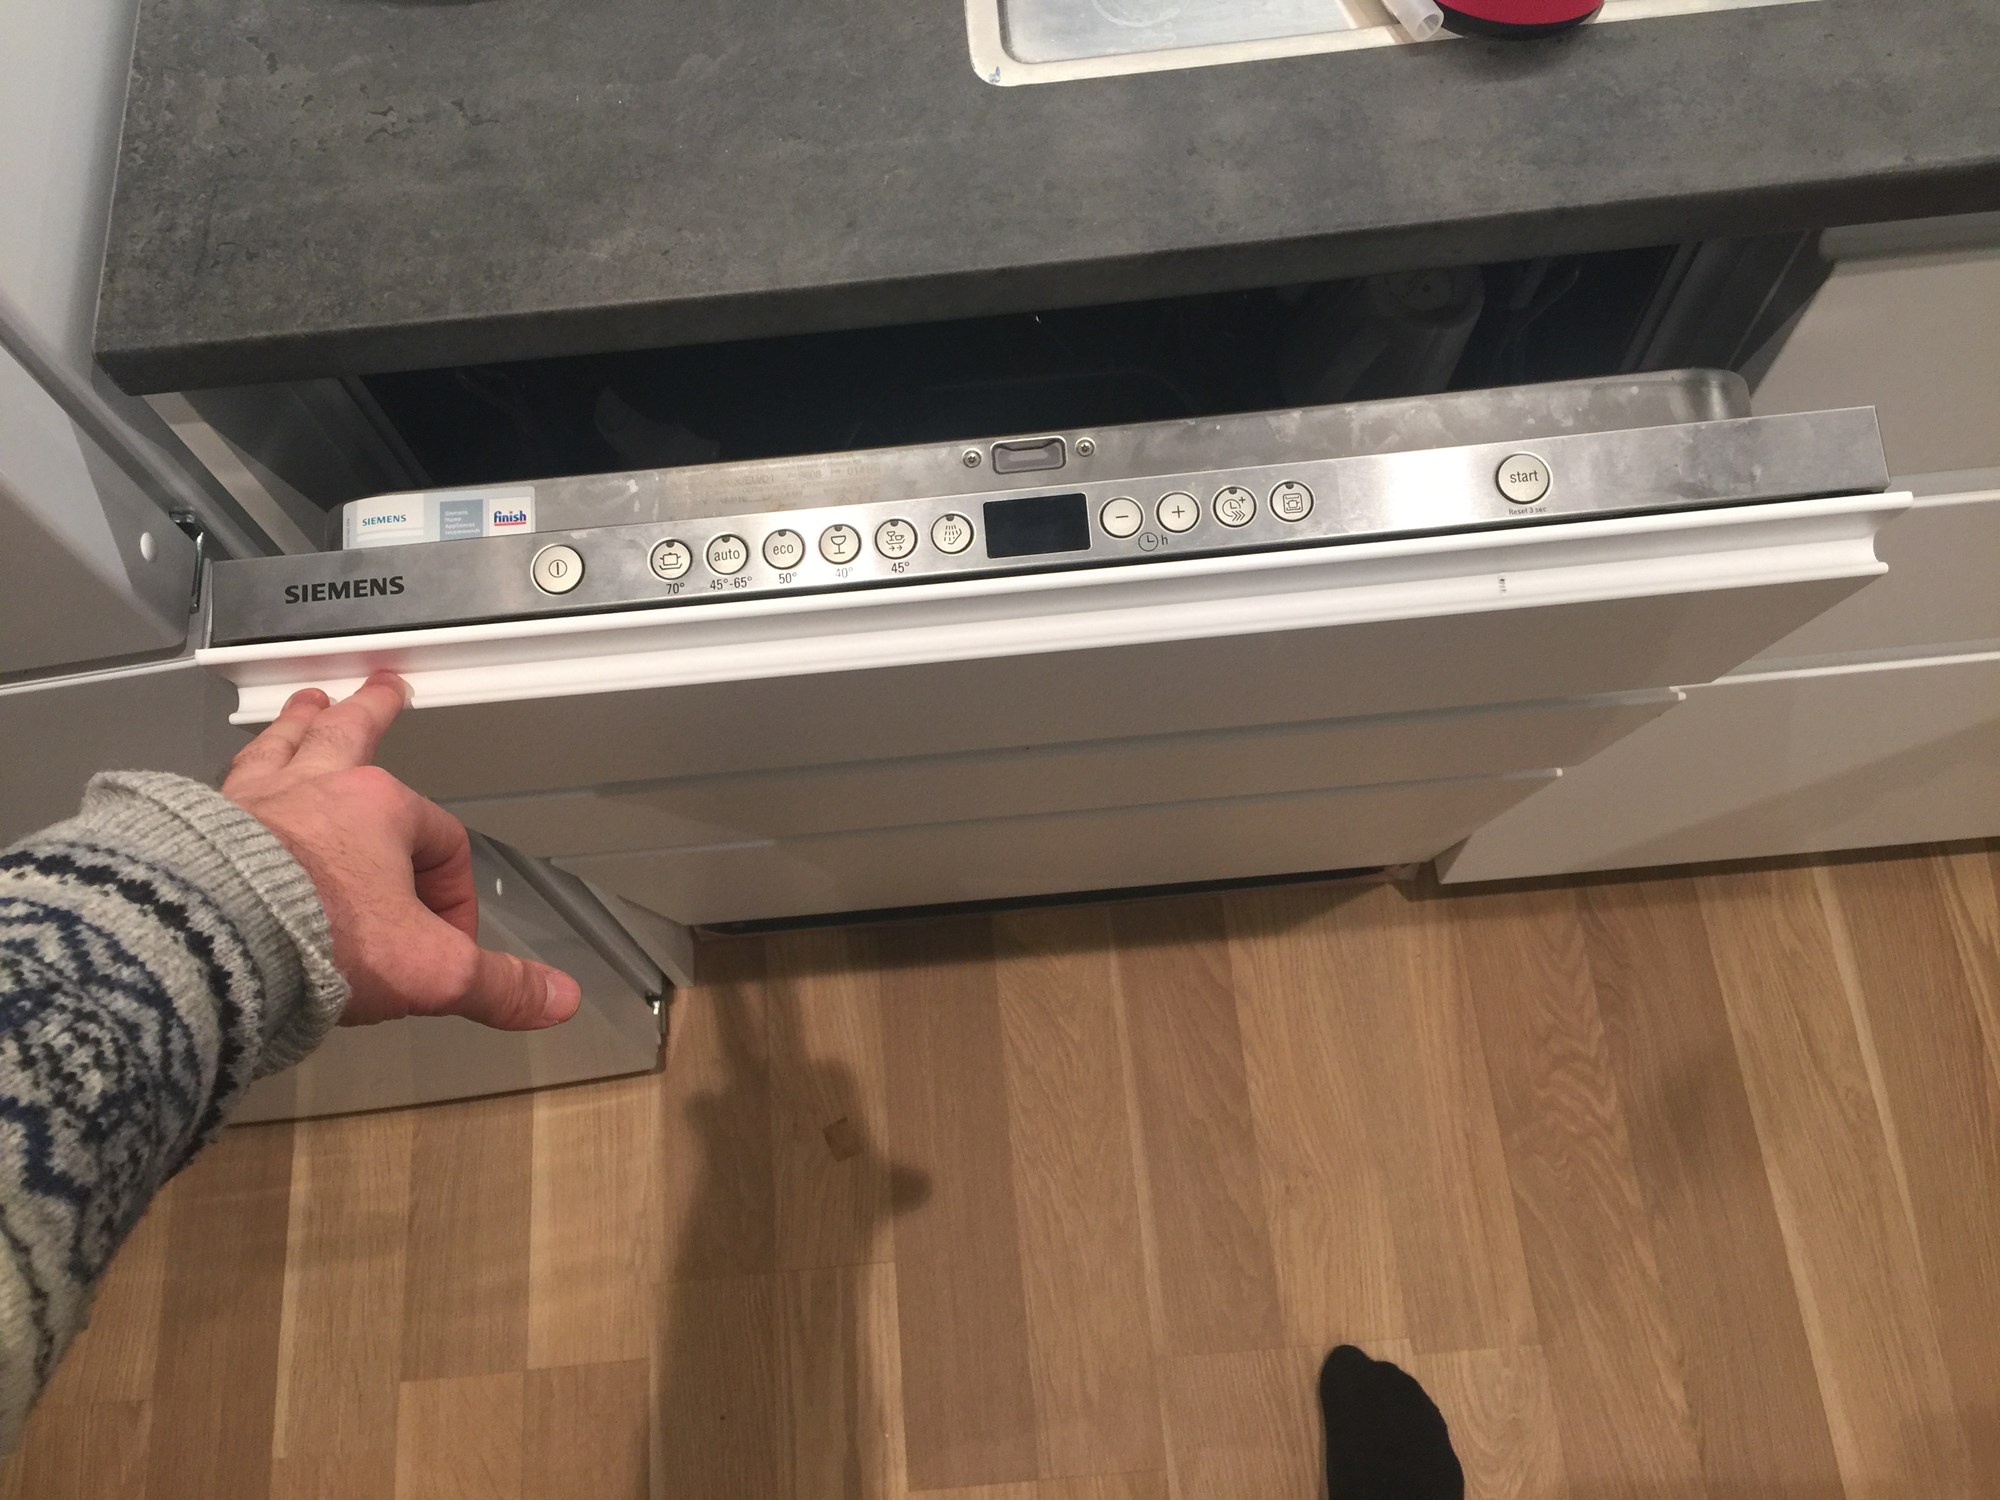 Bosch oppvaskmaskin passer ikke i den nye kjøkkenserien til IKEA. - IMG_7624.JPG - NL84